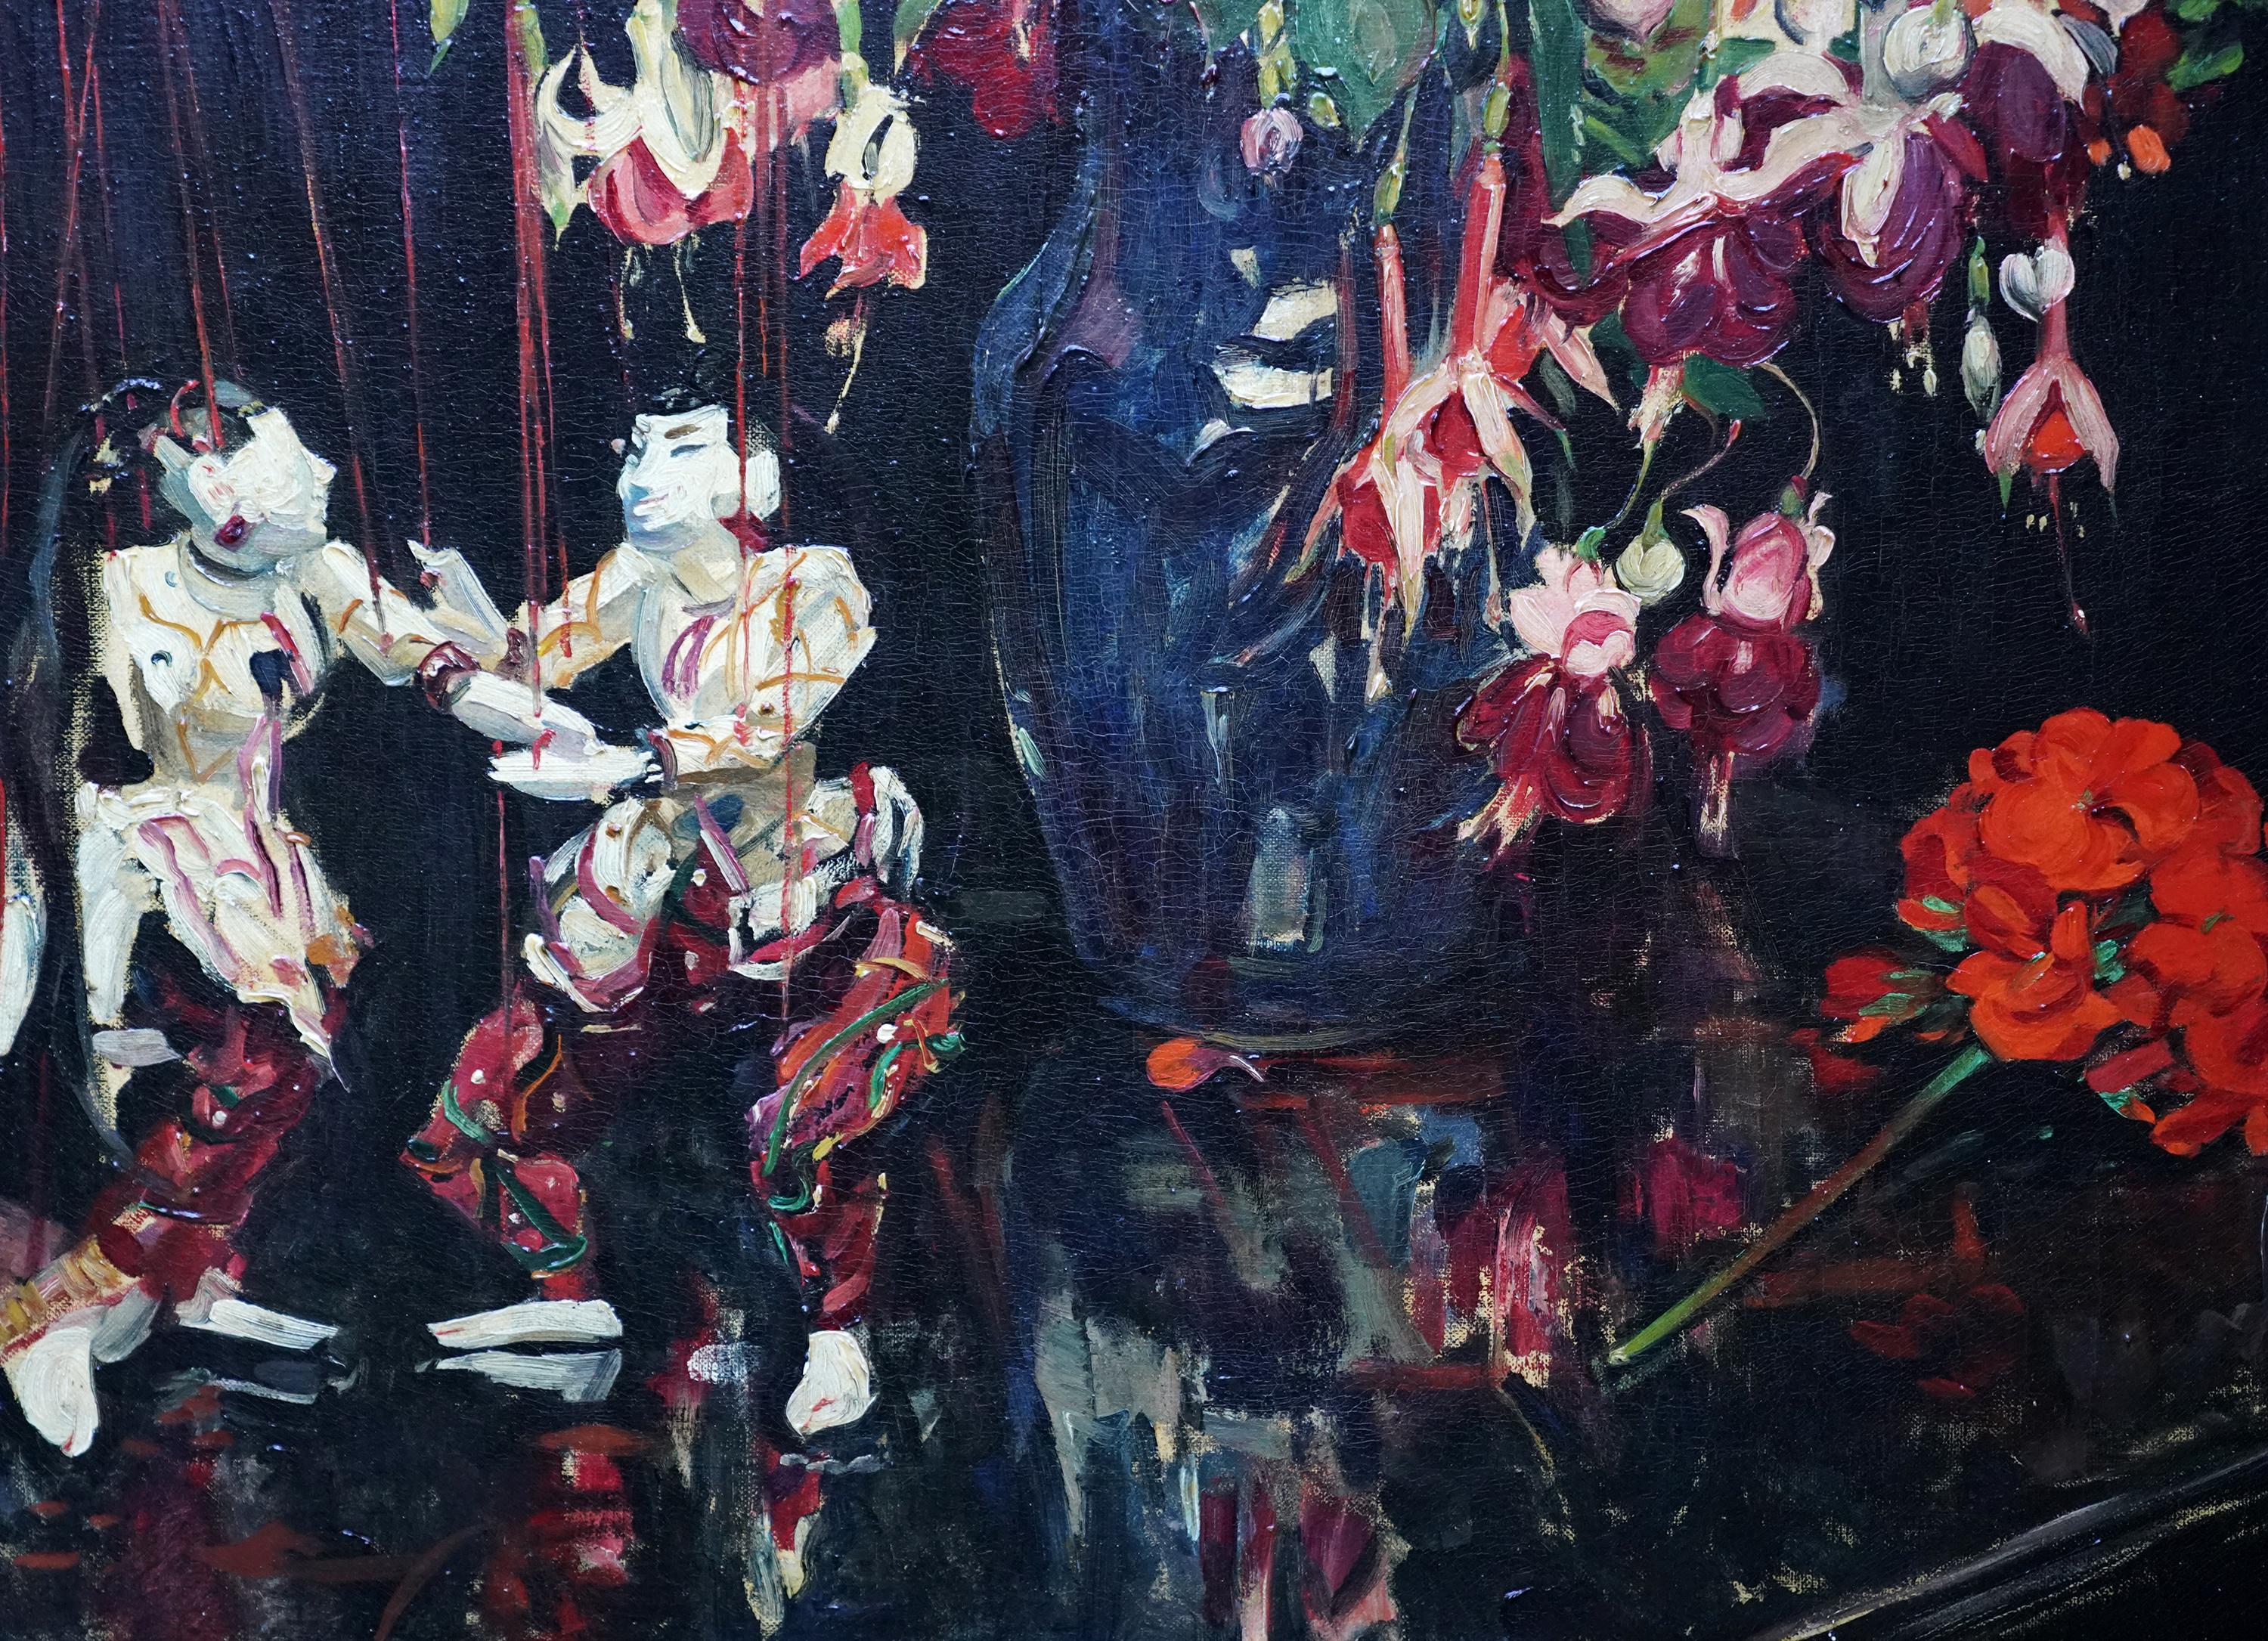 Cette charmante nature morte florale britannique est une peinture à l'huile de Herbert Davis Richter. Peint vers 1930, il représente un arrangement vibrant et intéressant de fuchsias et de géraniums dans un vase à côté d'un couple de marionnettes.